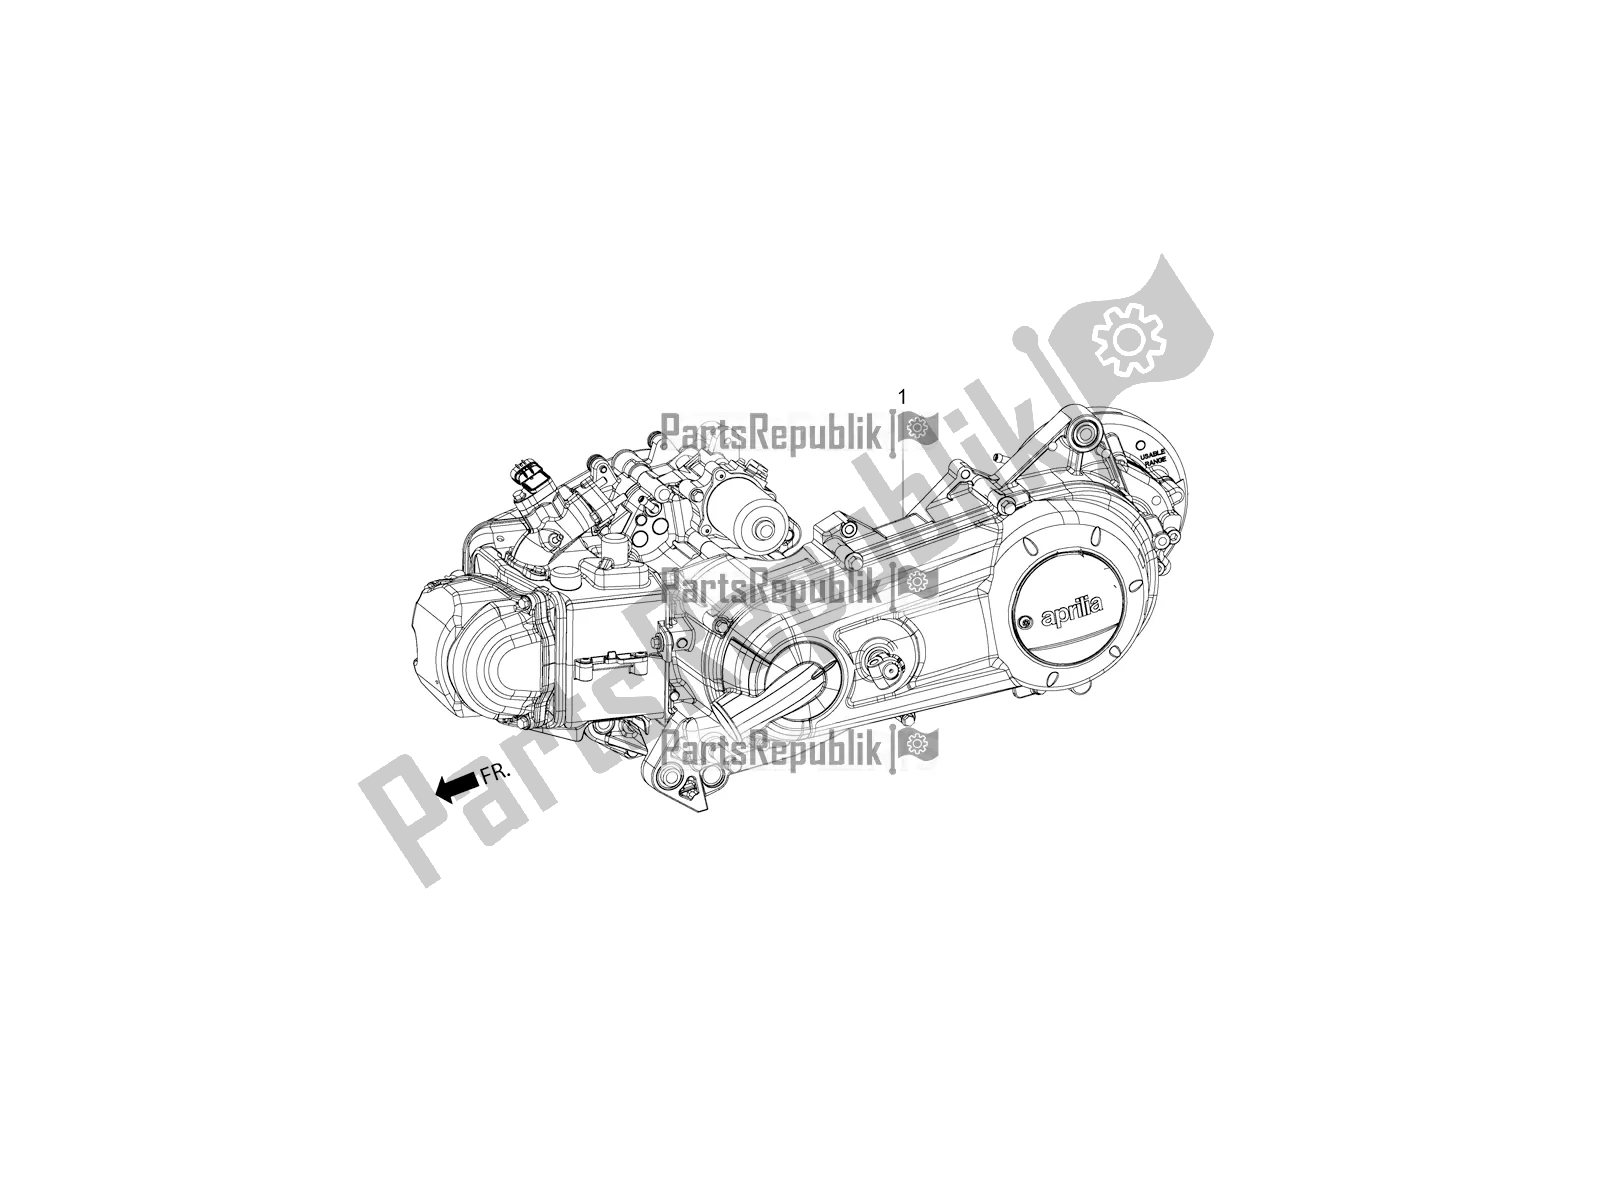 Toutes les pièces pour le Complete Engine du Aprilia SR 150 HE Carb. 2019